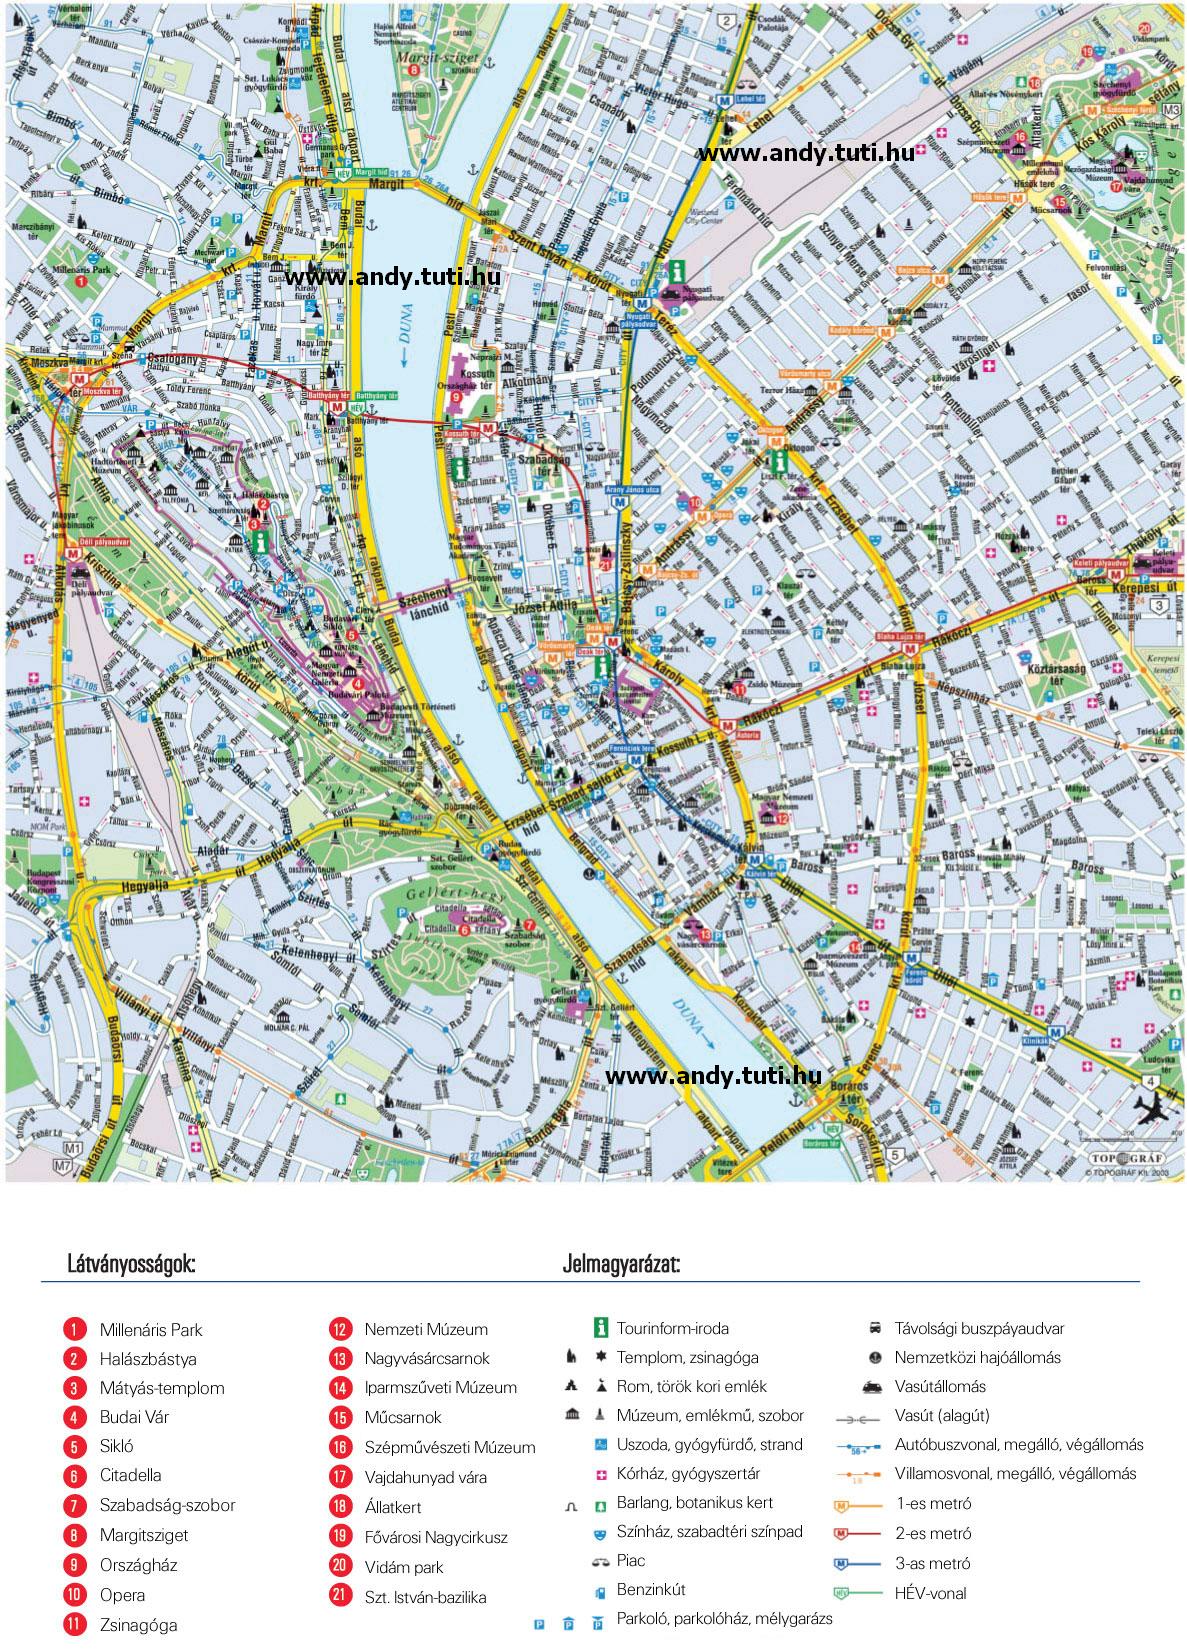 nyomtatható budapest térkép Letölthető térképek :::::: Powered by: .webtar.hu ::::::* nyomtatható budapest térkép